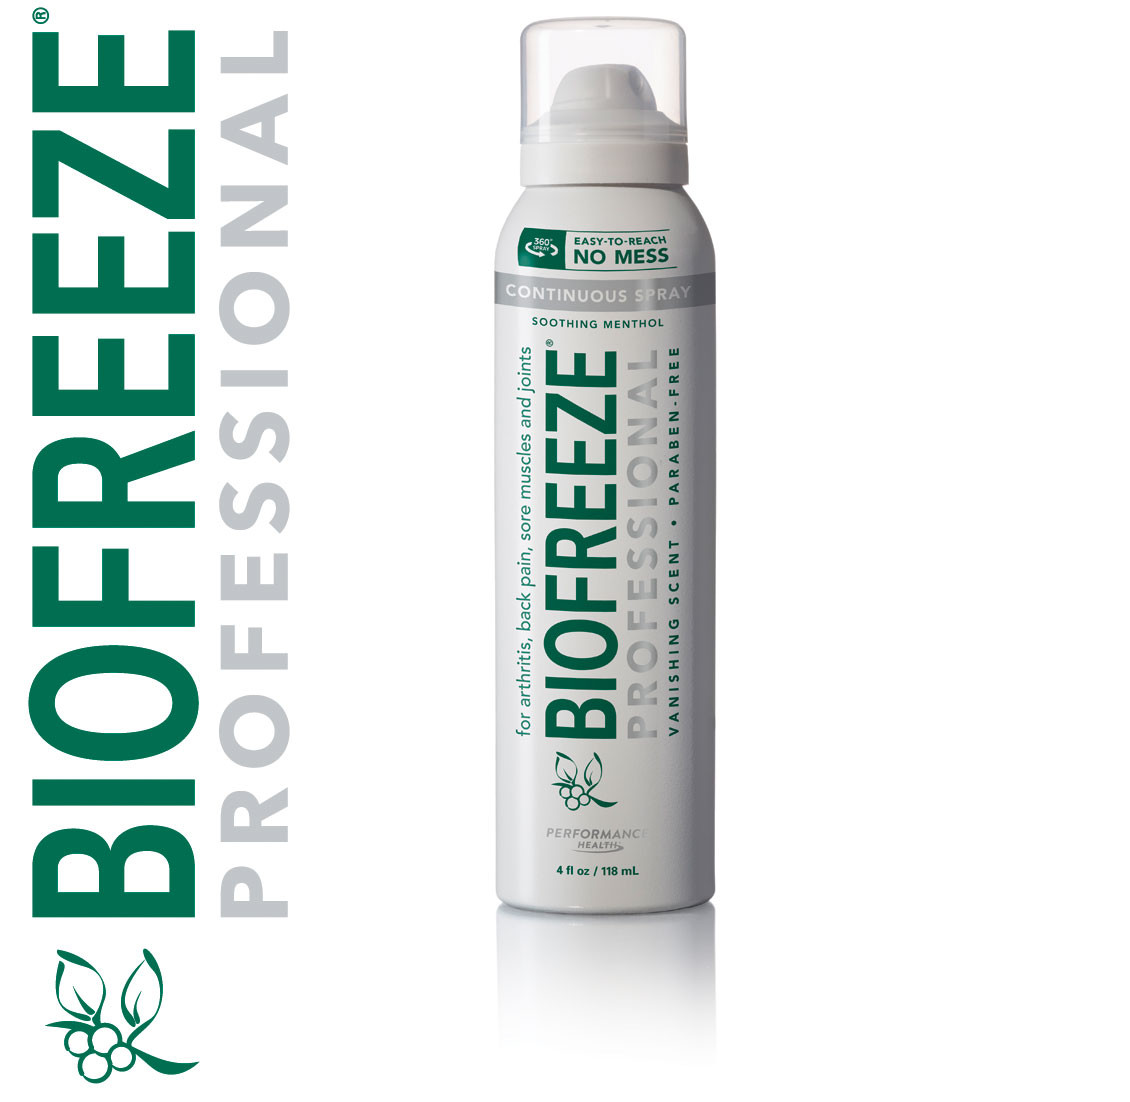 biofreeze spray